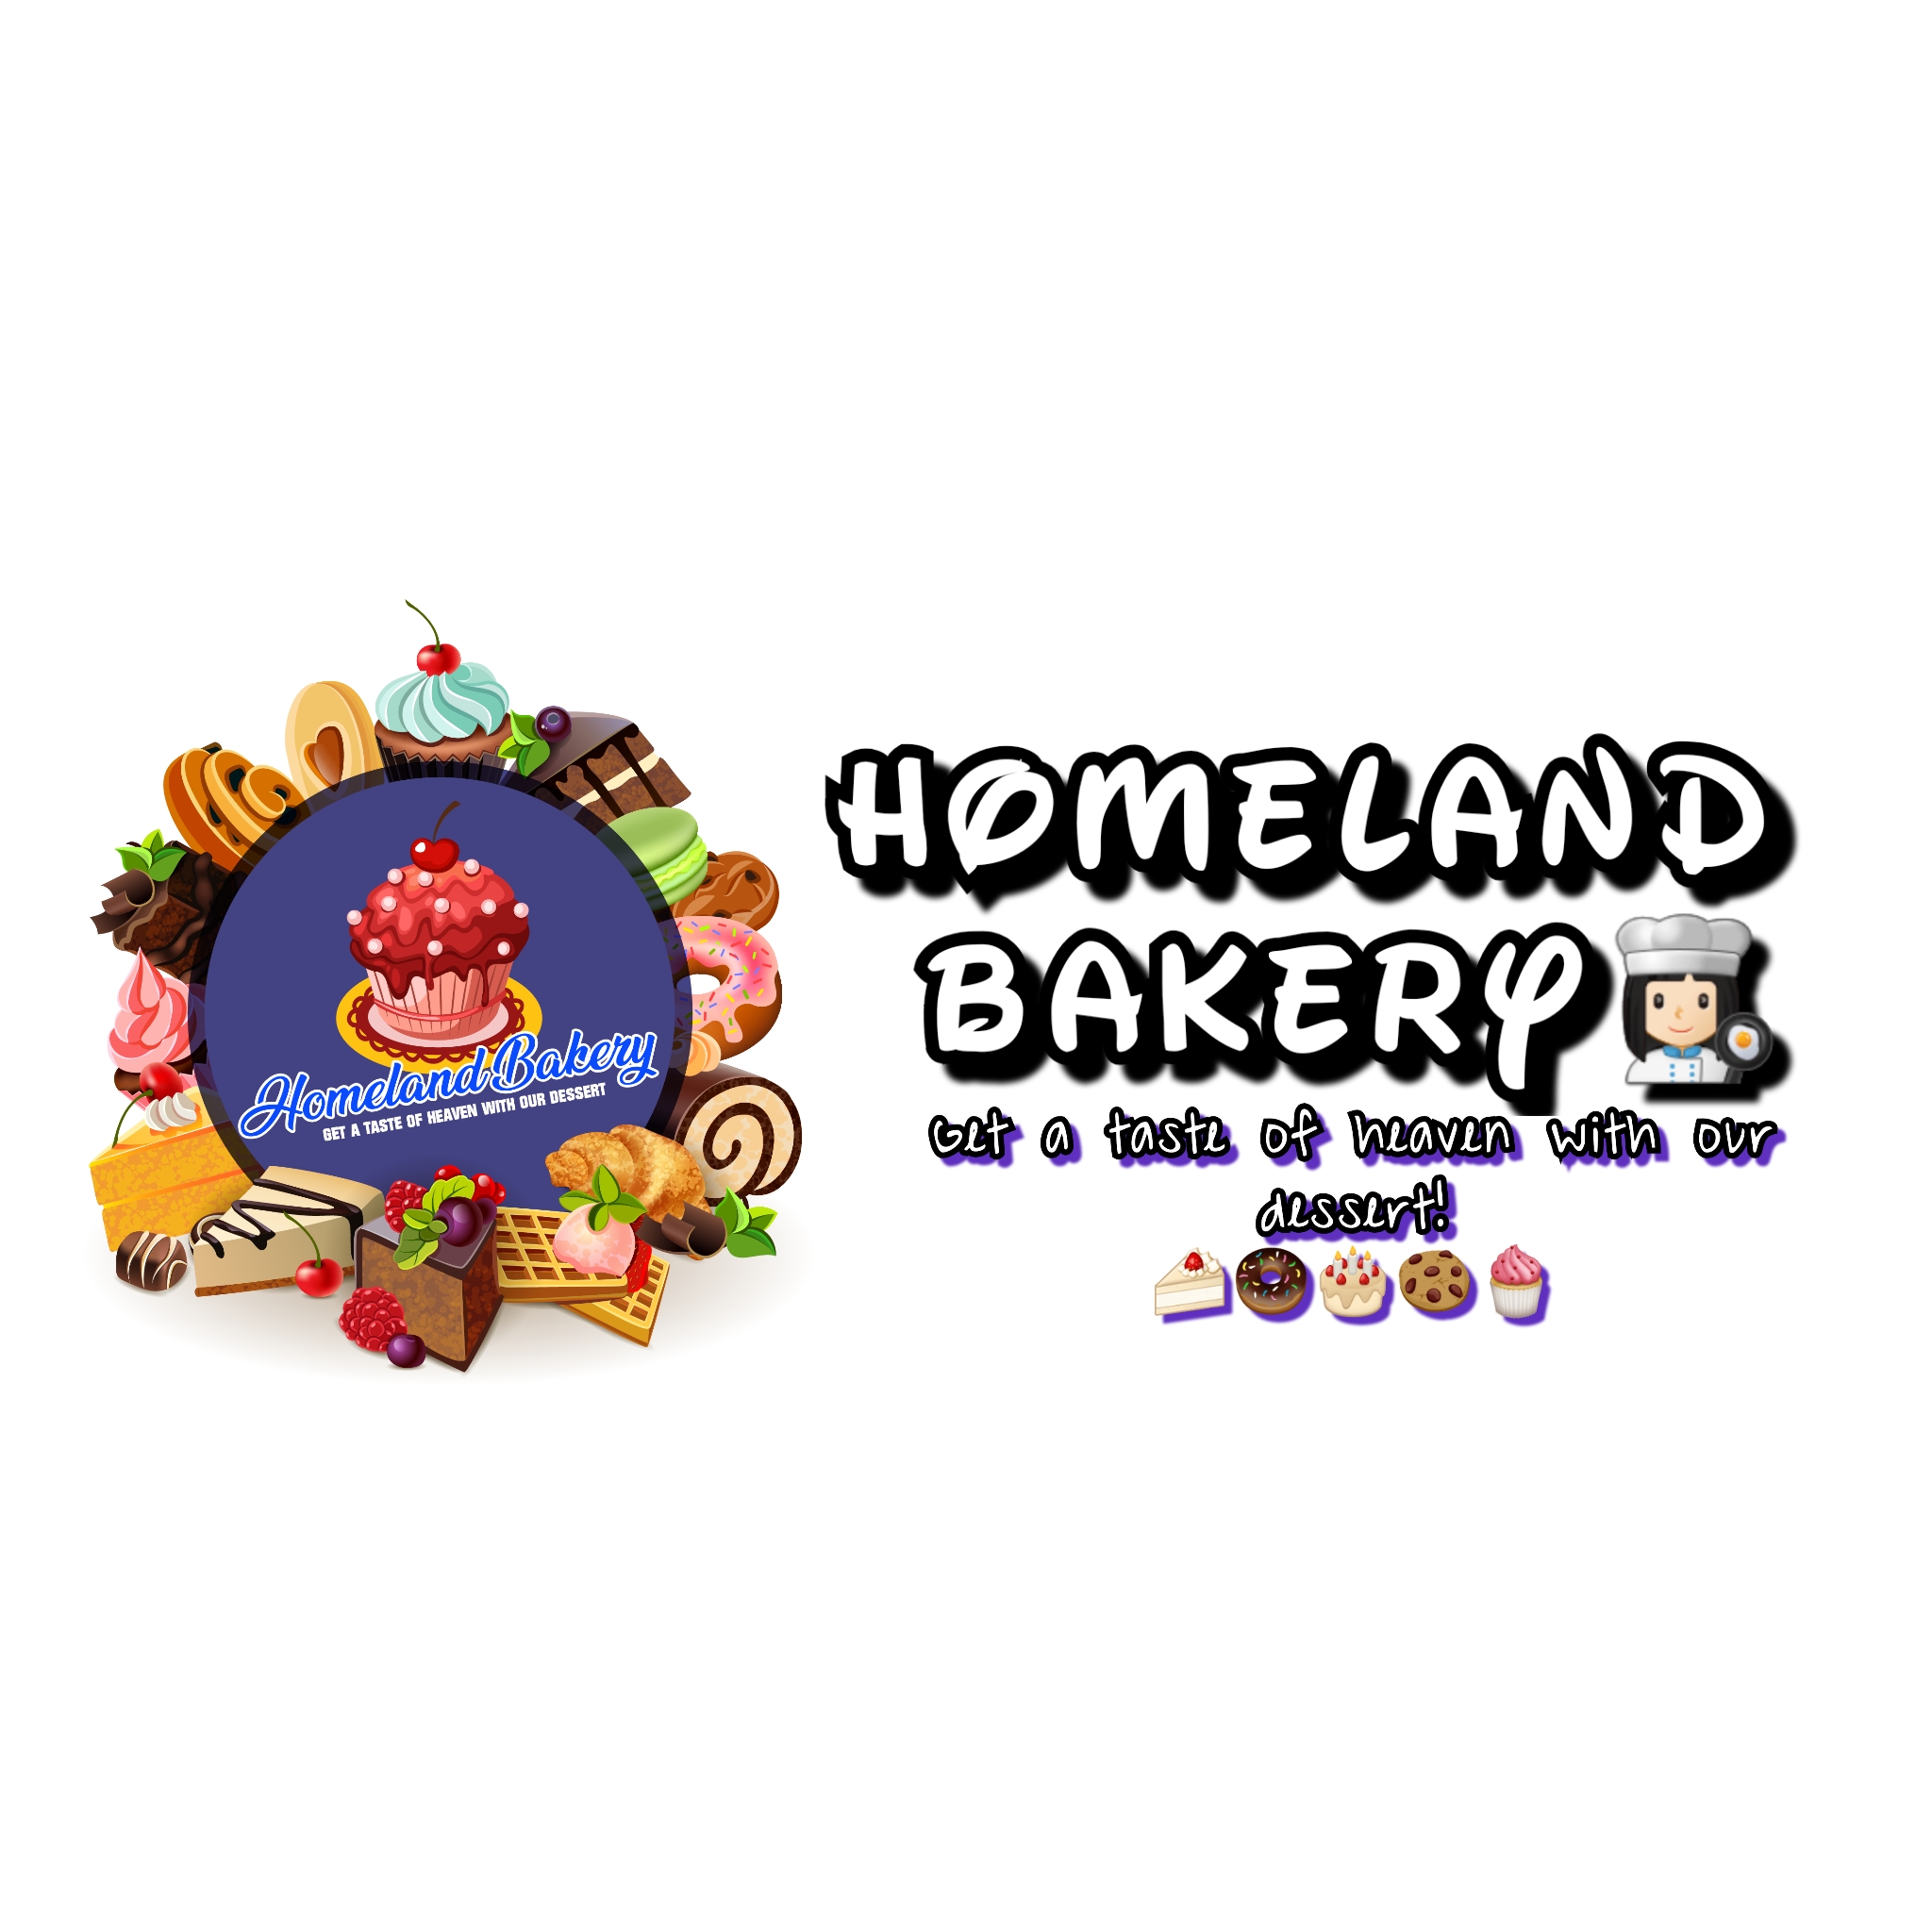 Homeland Bakery